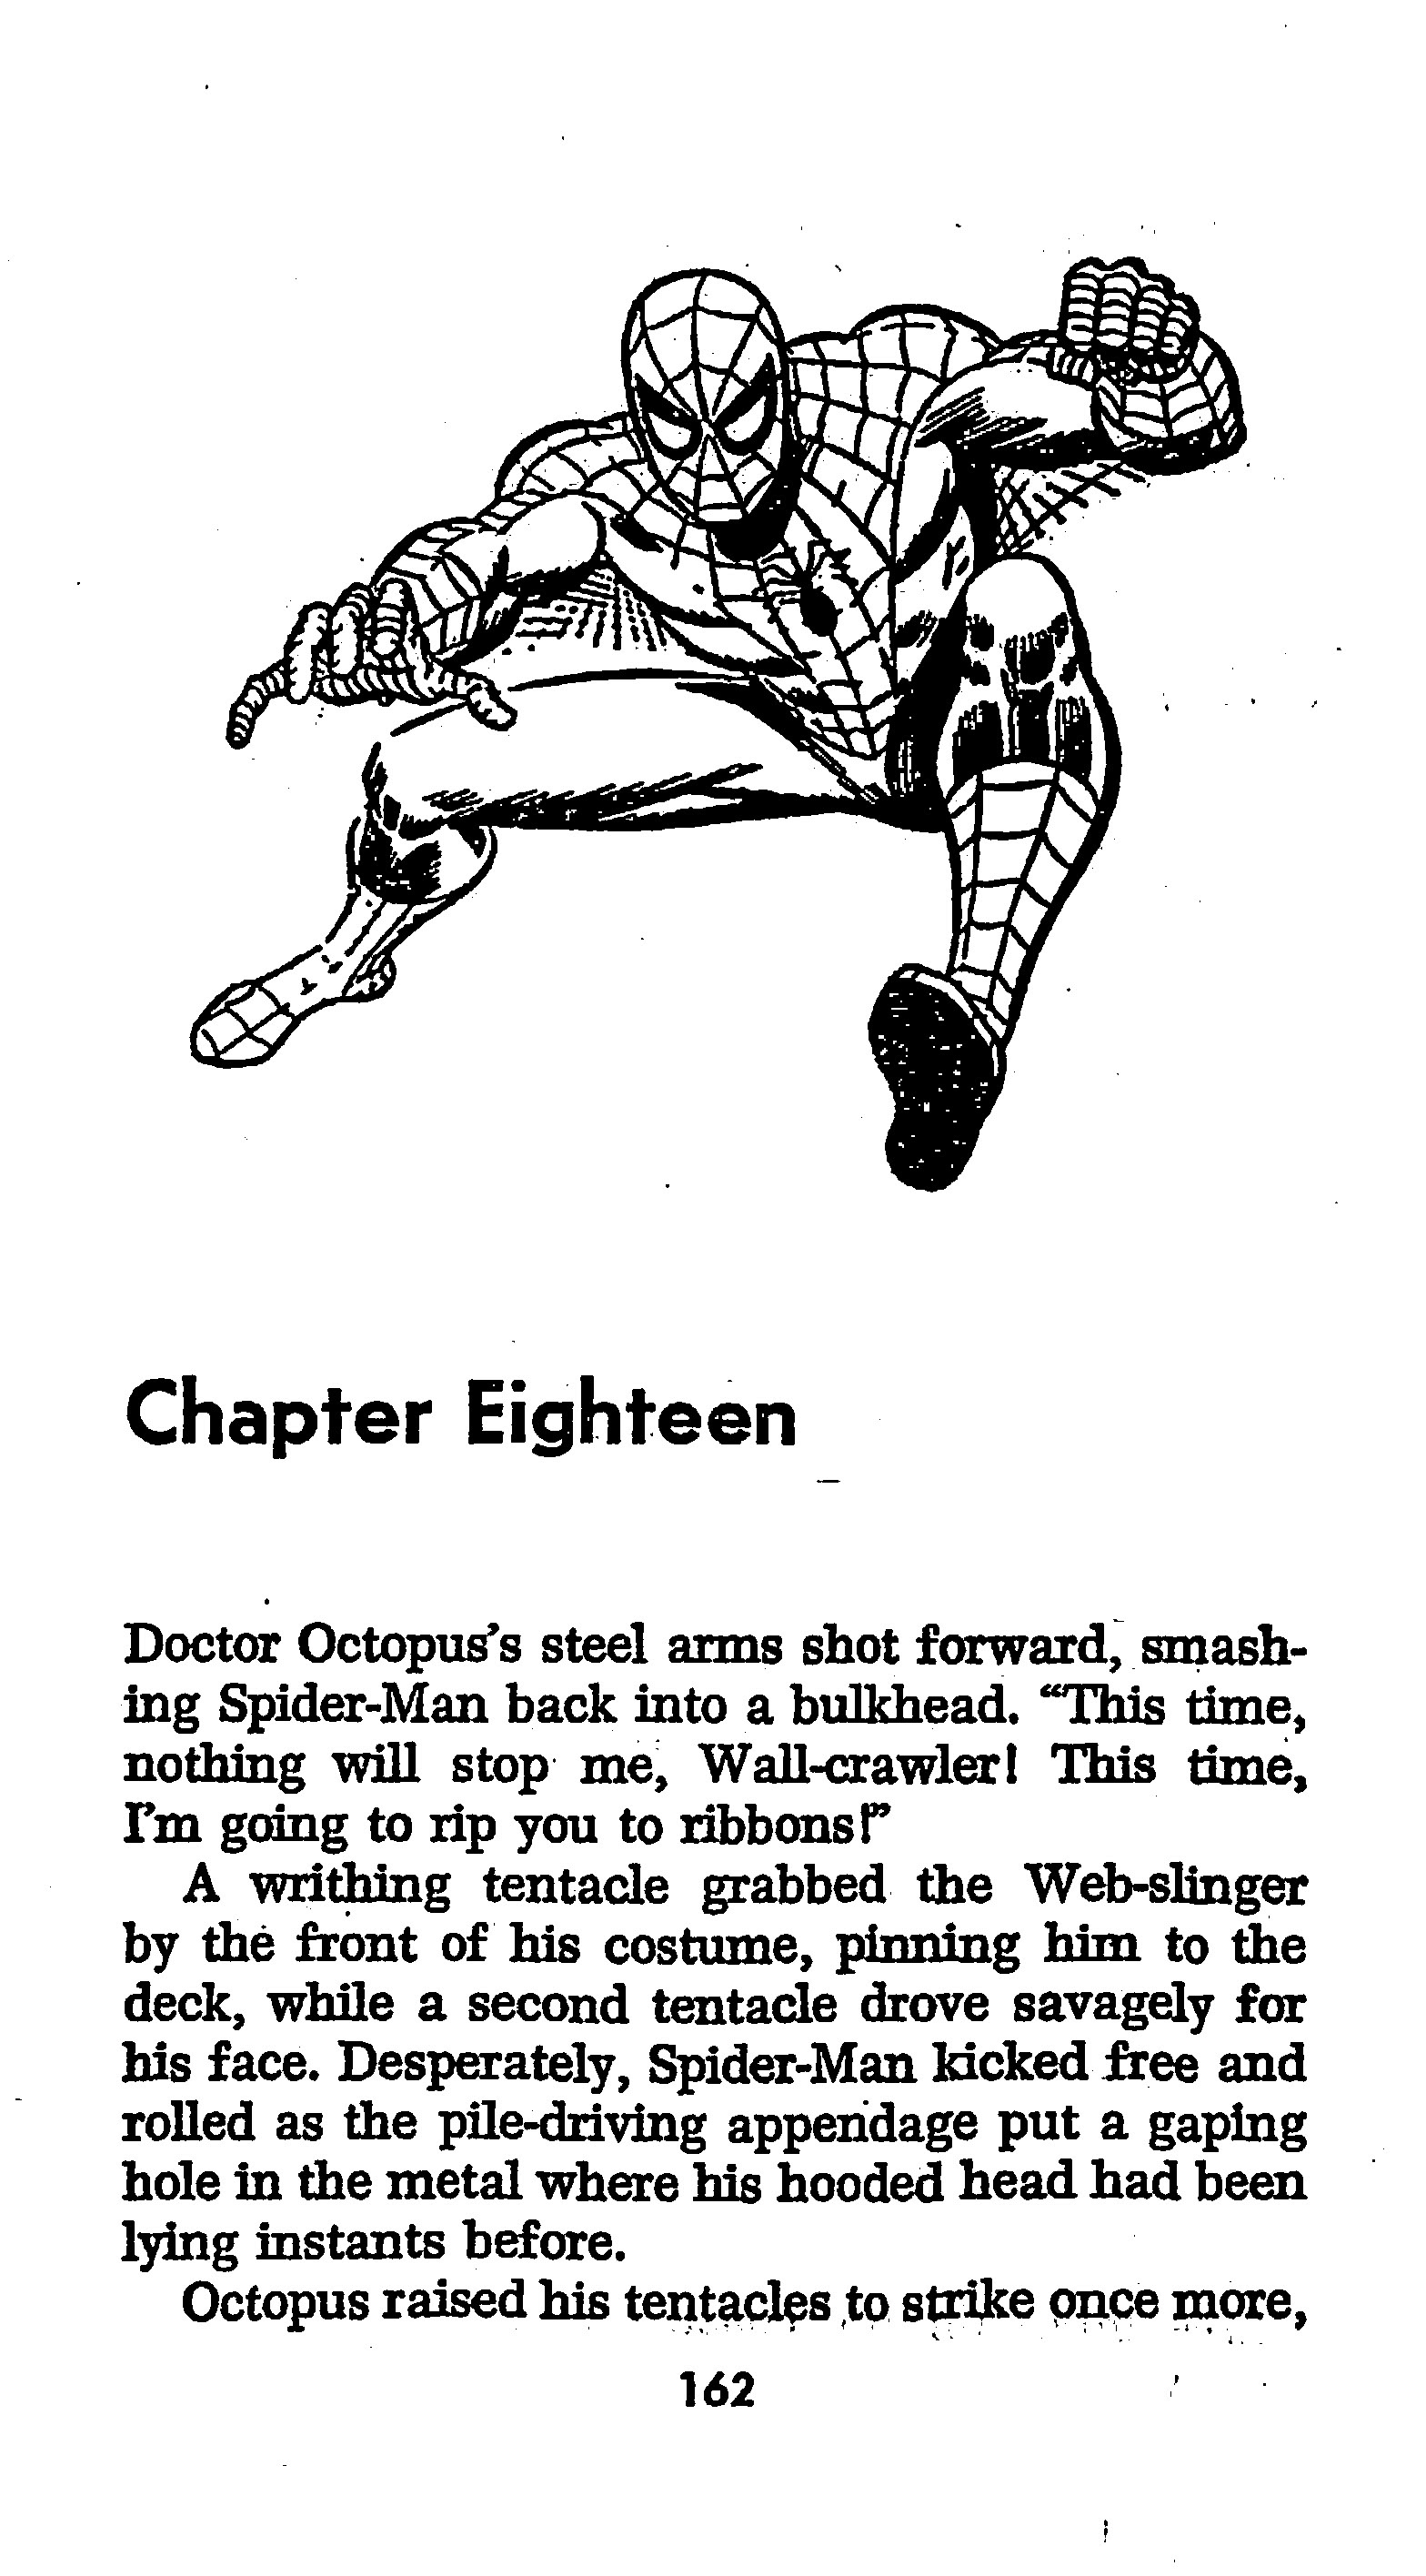 Read online The Amazing Spider-Man: Mayhem in Manhattan comic -  Issue # TPB (Part 2) - 64